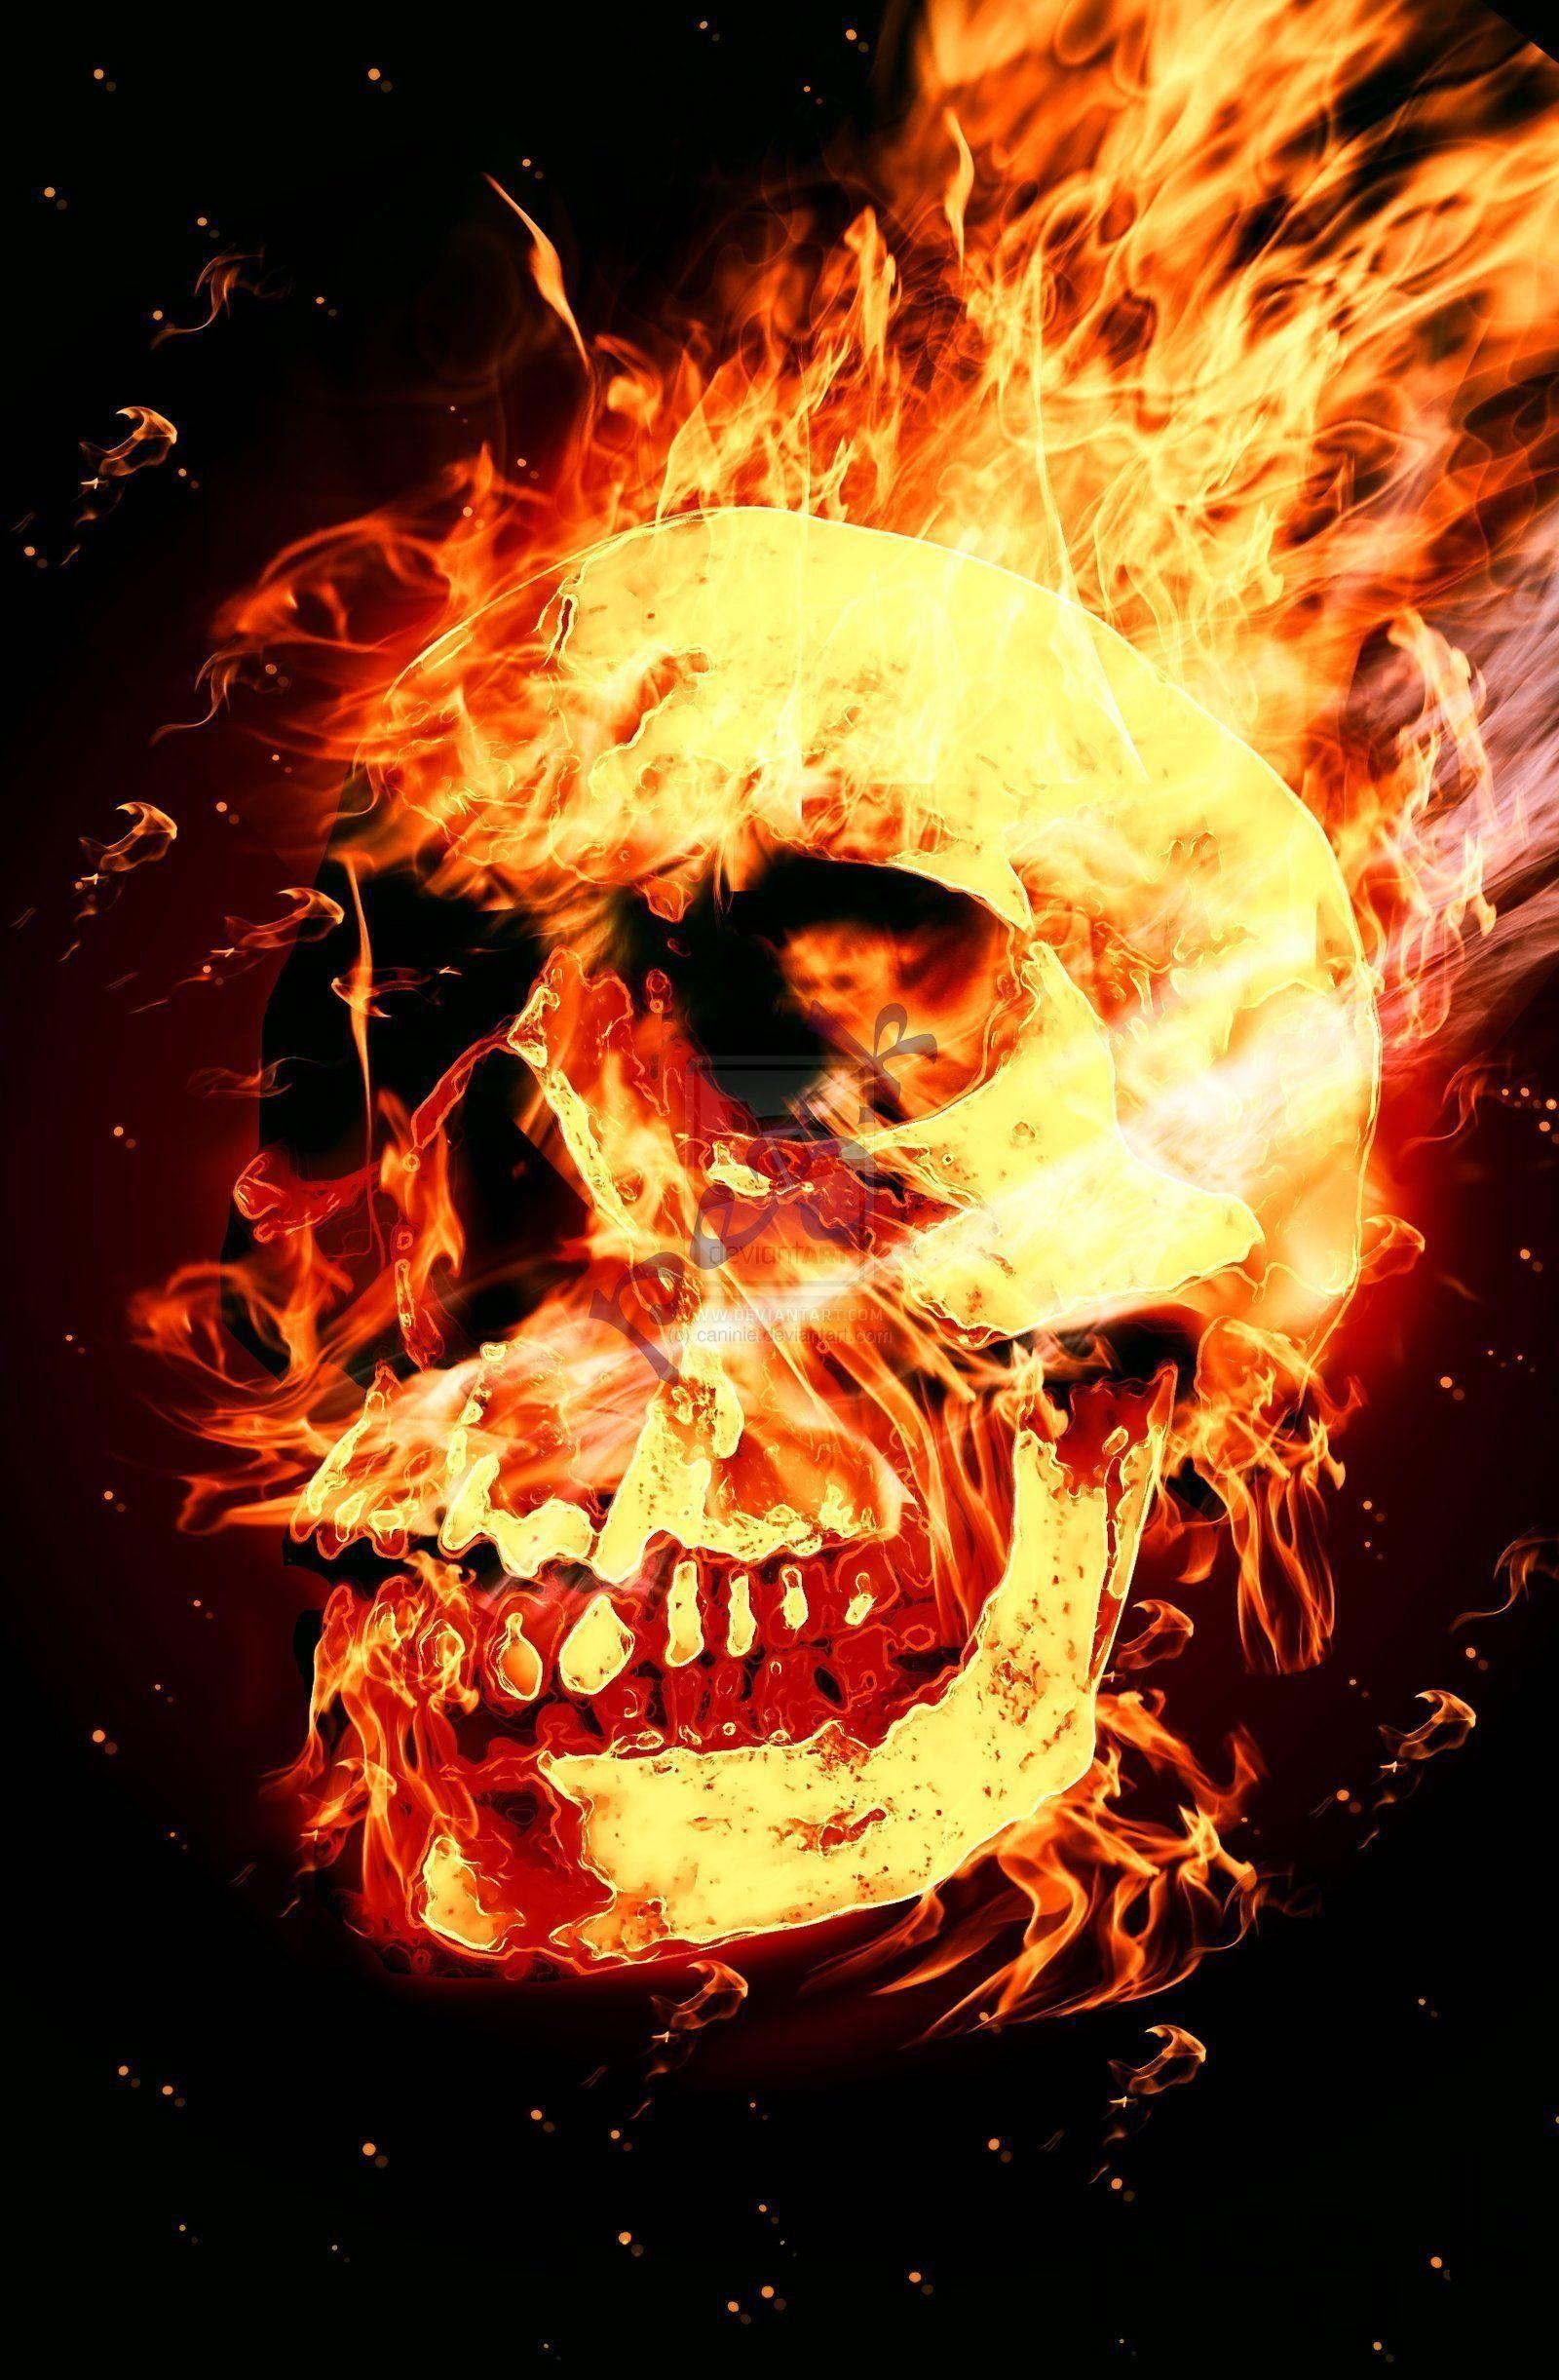 Skull Fire Wallpaperamazing Skull Fire Wallpaper 1600x2442 For Mac